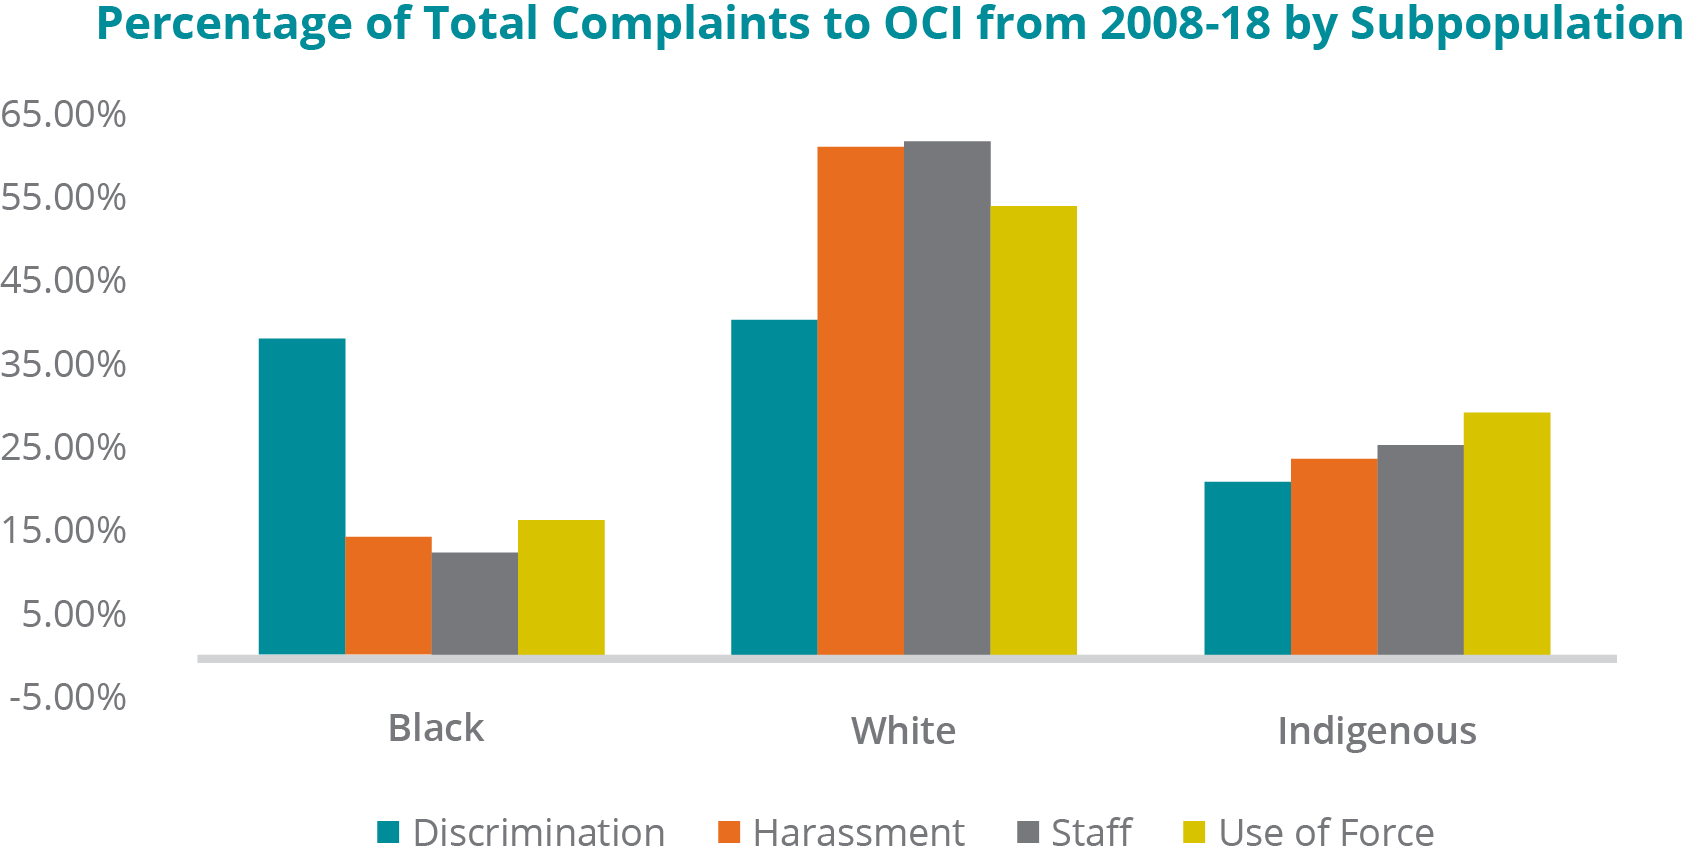 Un graphique illustrant le pourcentage de types de plaintes spécifiques provenant de sous populations ethniques particulières, de 2008 à 2018 -	Détenus noirs : 38,41 % des plaintes relatives à la discrimination; 14,48 % des plaintes en matière de harcèlement; 12,50 % des plaintes concernant le personnel; 16,38 % des plaintes liées au recours à la force. - Détenus blancs : 40,58 % des plaintes relatives à la discrimination; 61,56 % des plaintes en matière de harcèlement; 62,02 % des plaintes concernant le personnel; 54,31 % des plaintes liées au recours à la force -	Détenus autochtones : 21,01 % des plaintes relatives à la discrimination; 23,96 % des plaintes en matière de harcèlement; 25,48 % des plaintes concernant le personnel; 29,31 % des plaintes liées au recours à la force.